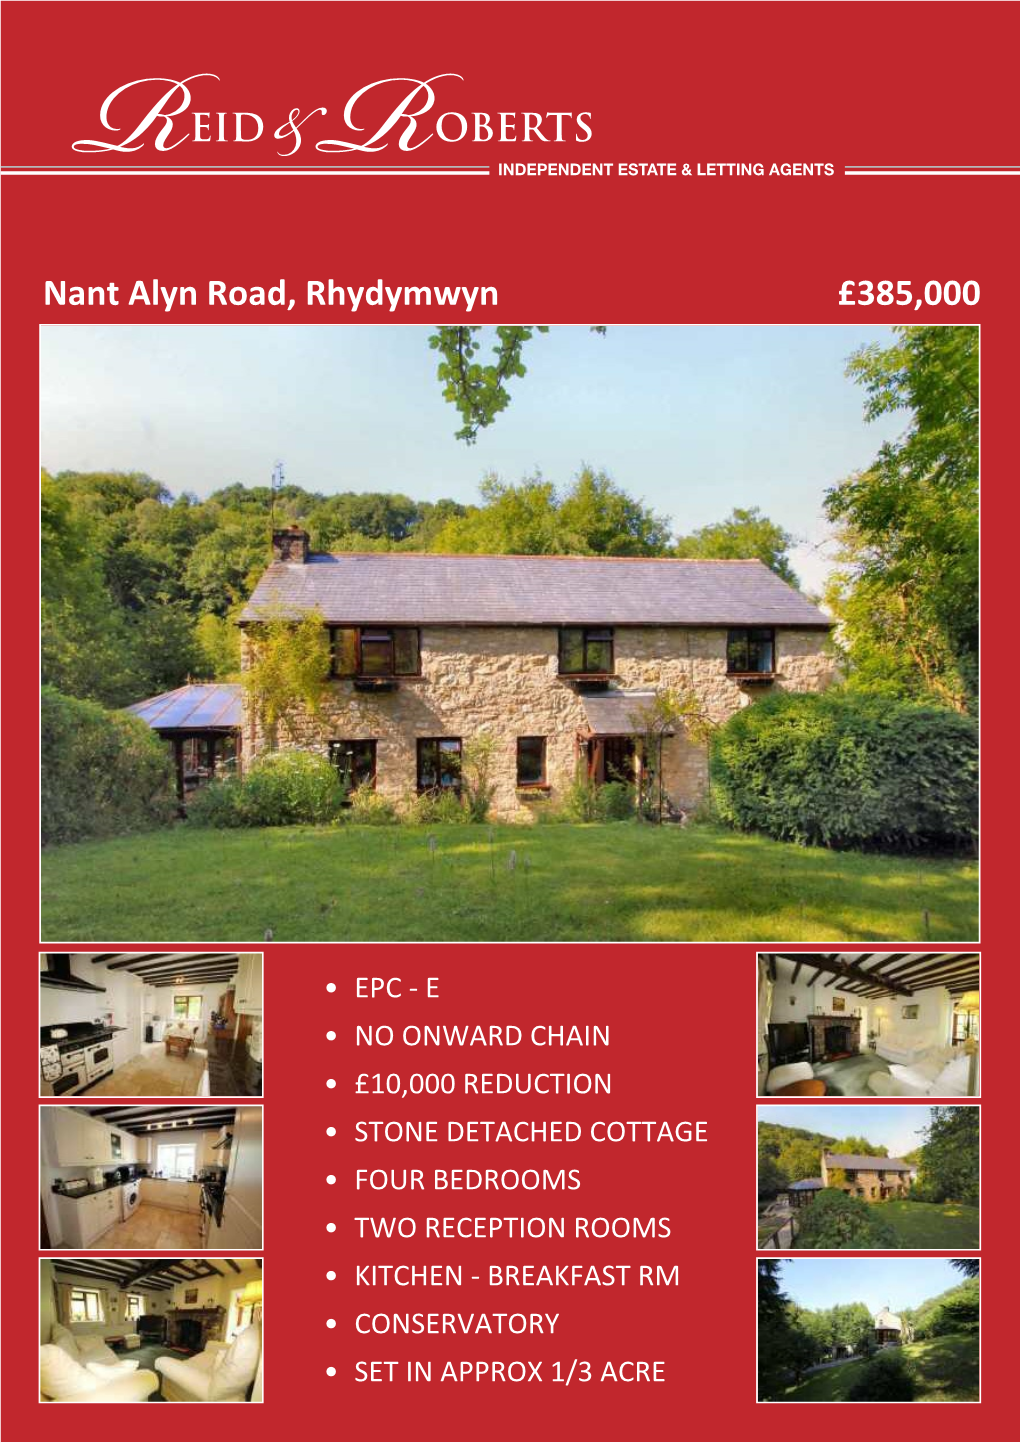 Nant Alyn Road, Rhydymwyn £385,000